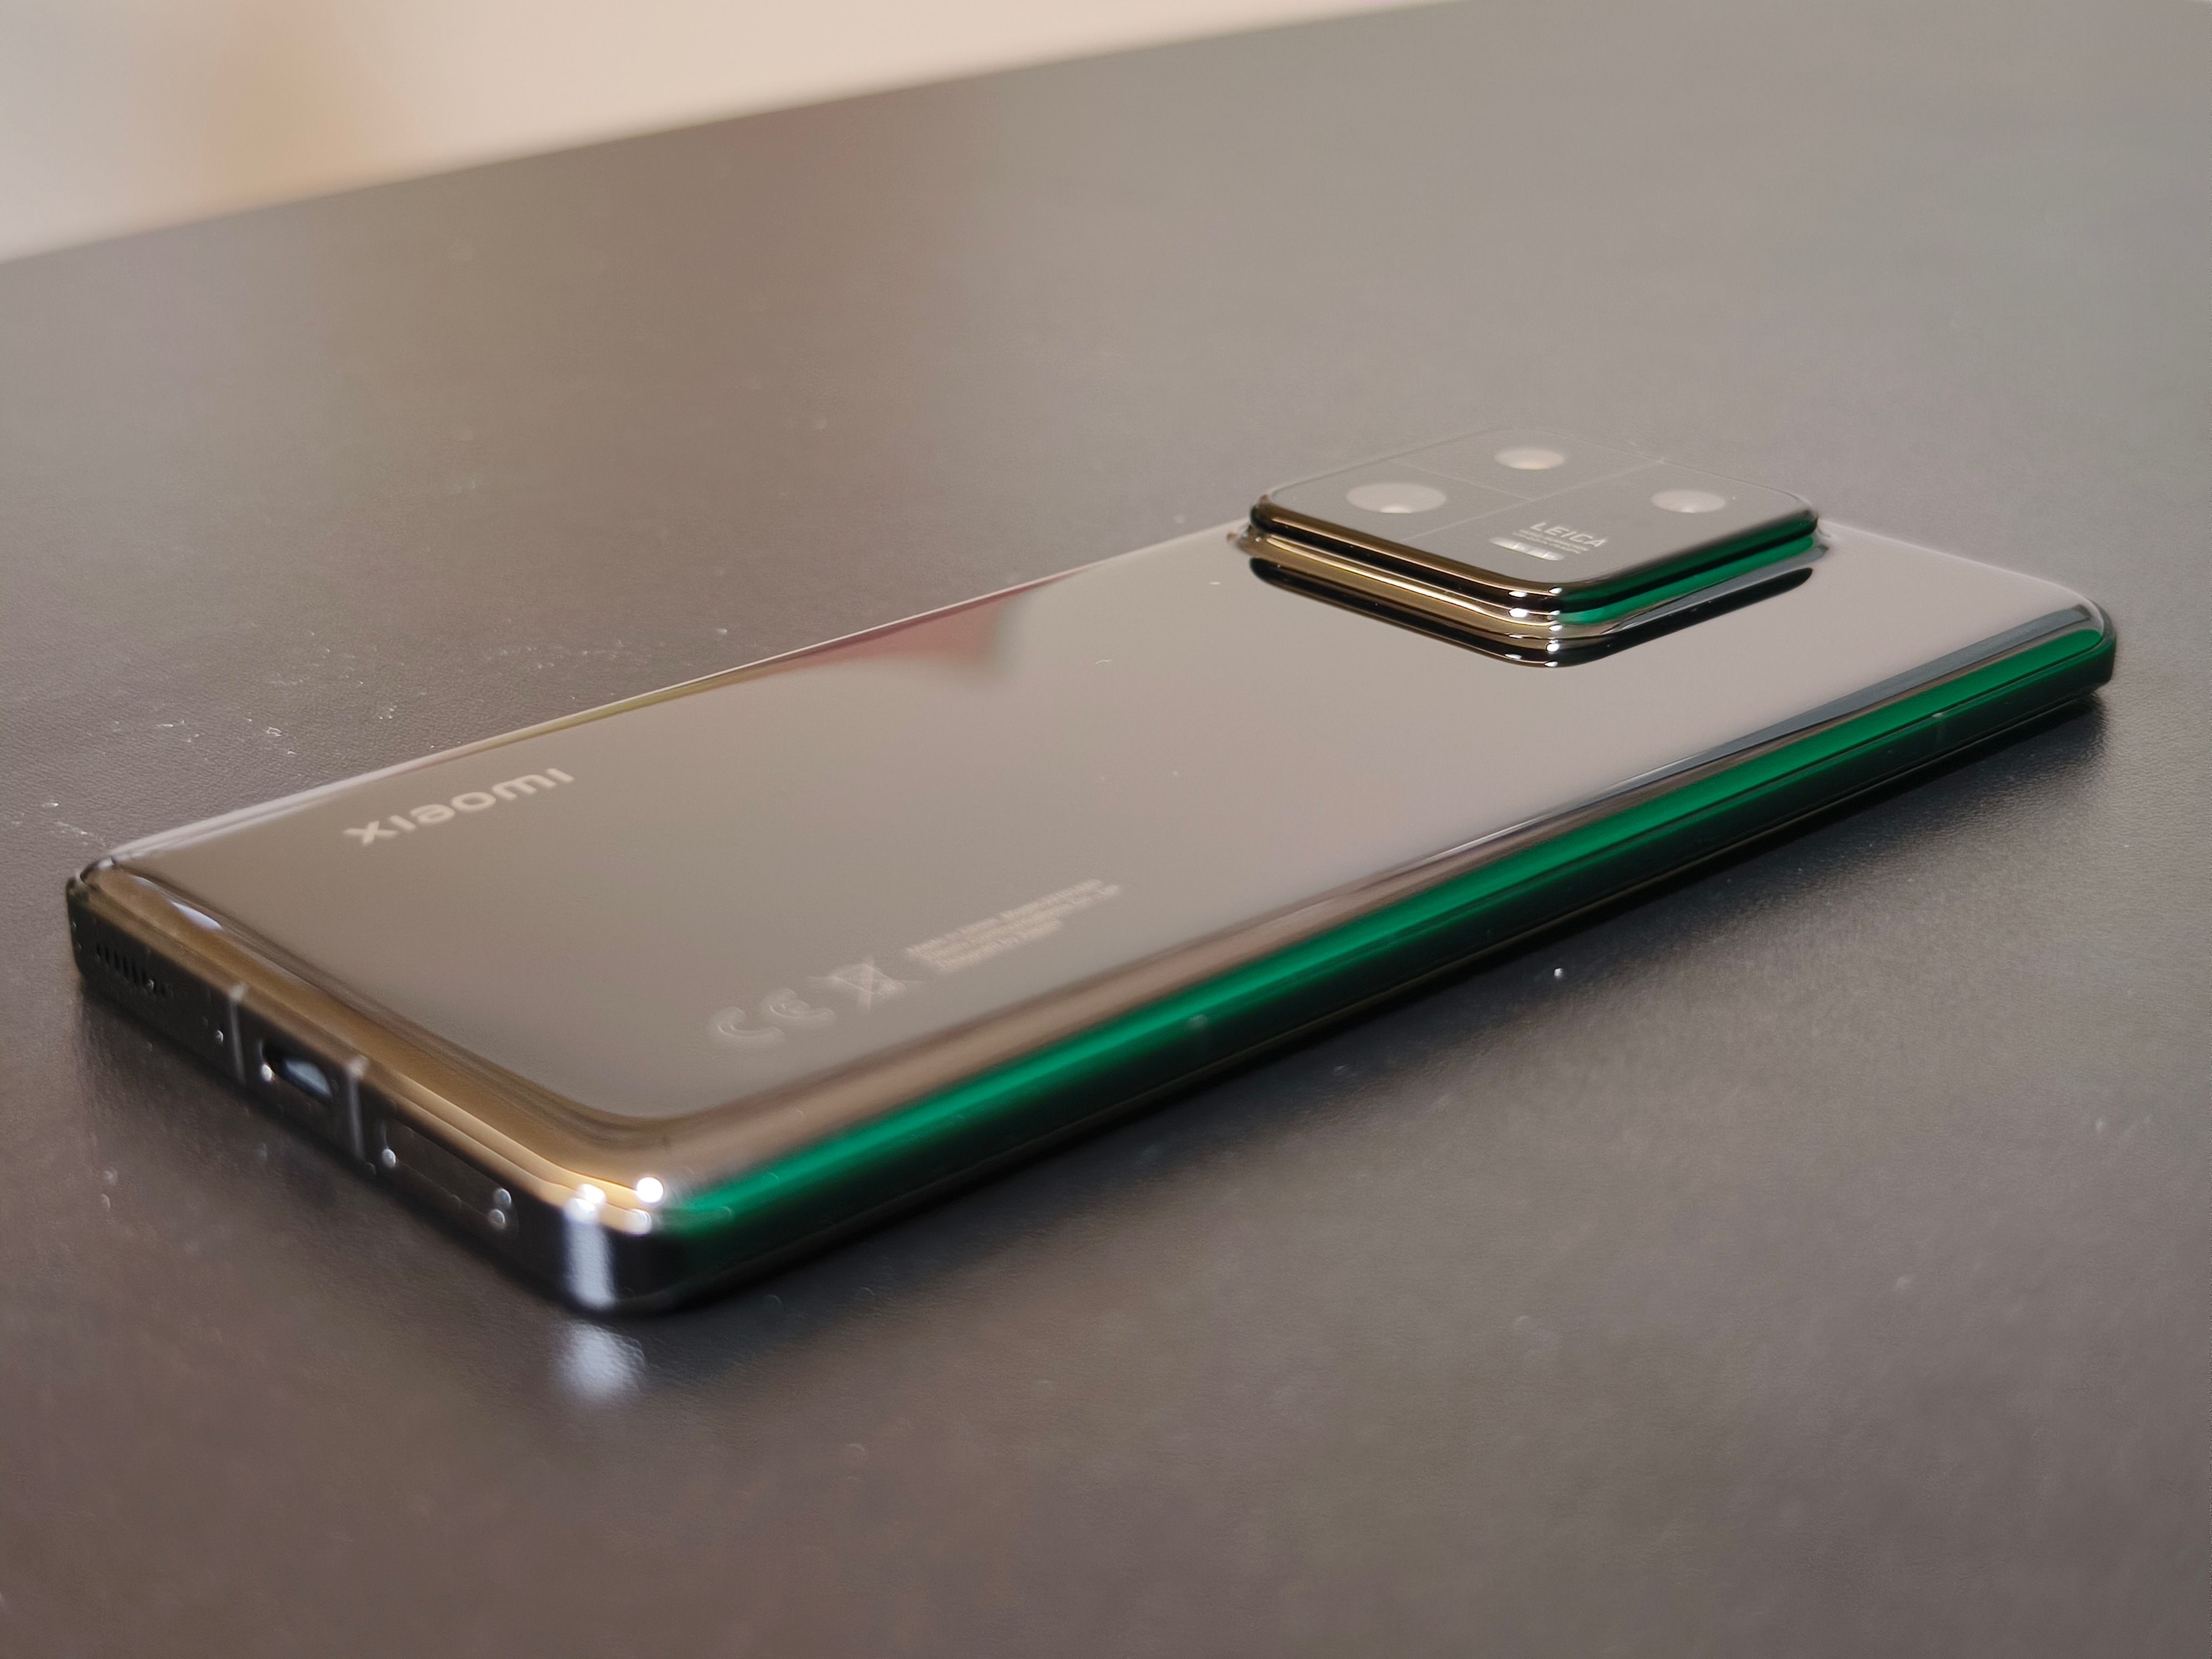 Xiaomi Redmi Note 13 Serie startet überraschend in den Verkauf